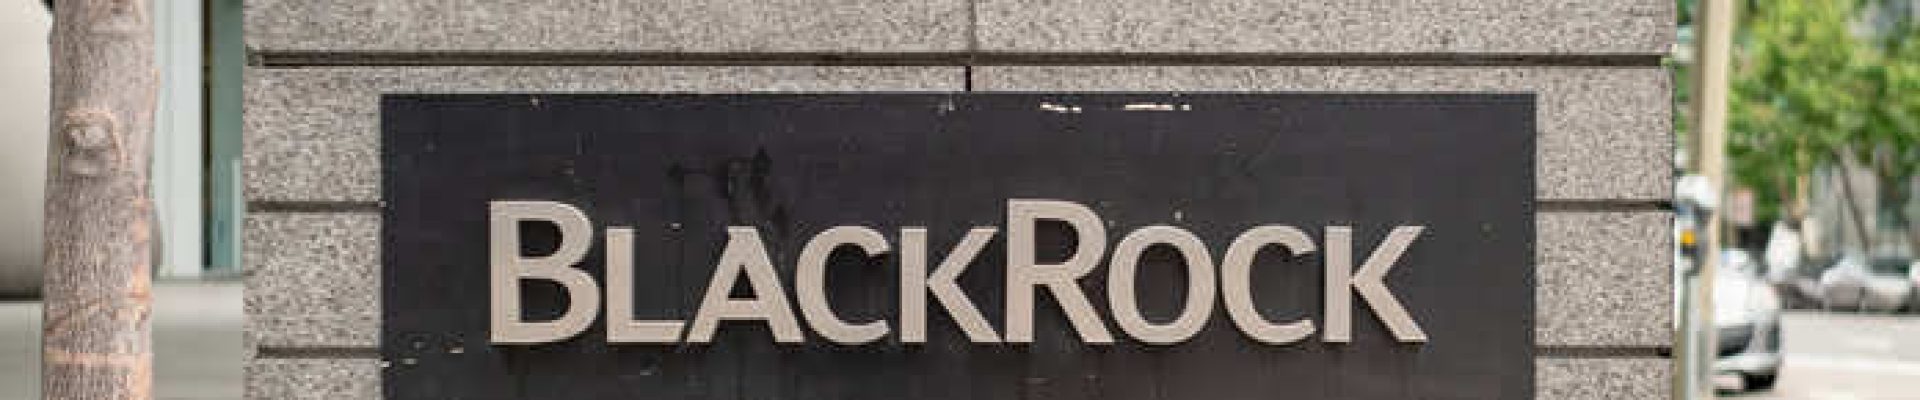 BlackRock-Stock.jpg